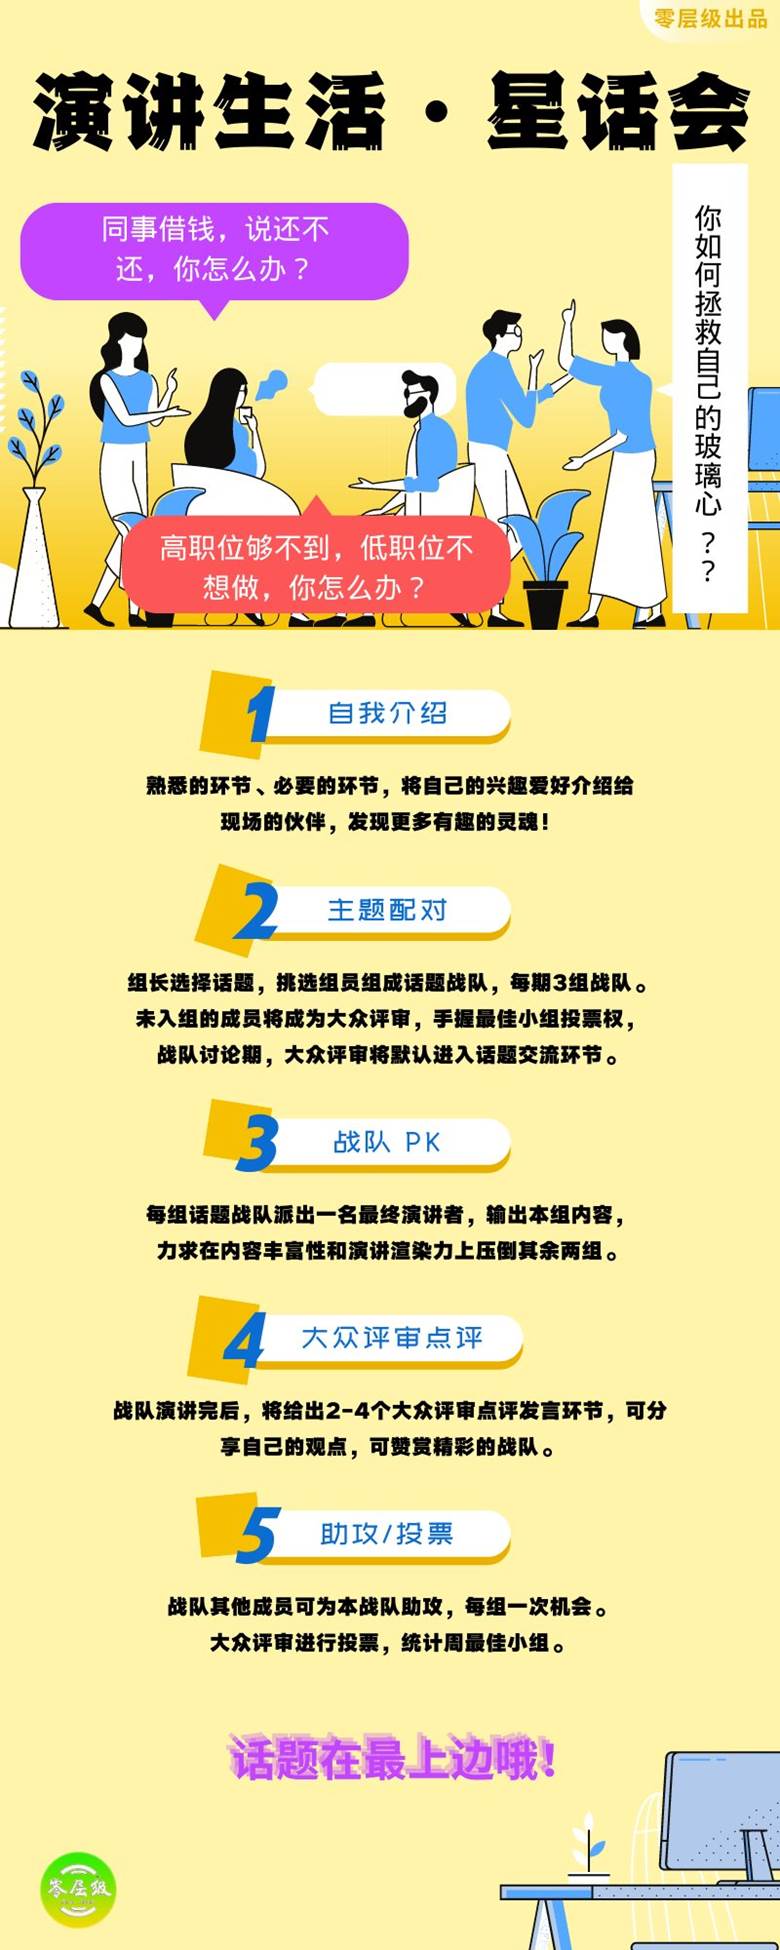 绿蓝色大豆点食用益处照片食品宣传中文信息图表 (1).png